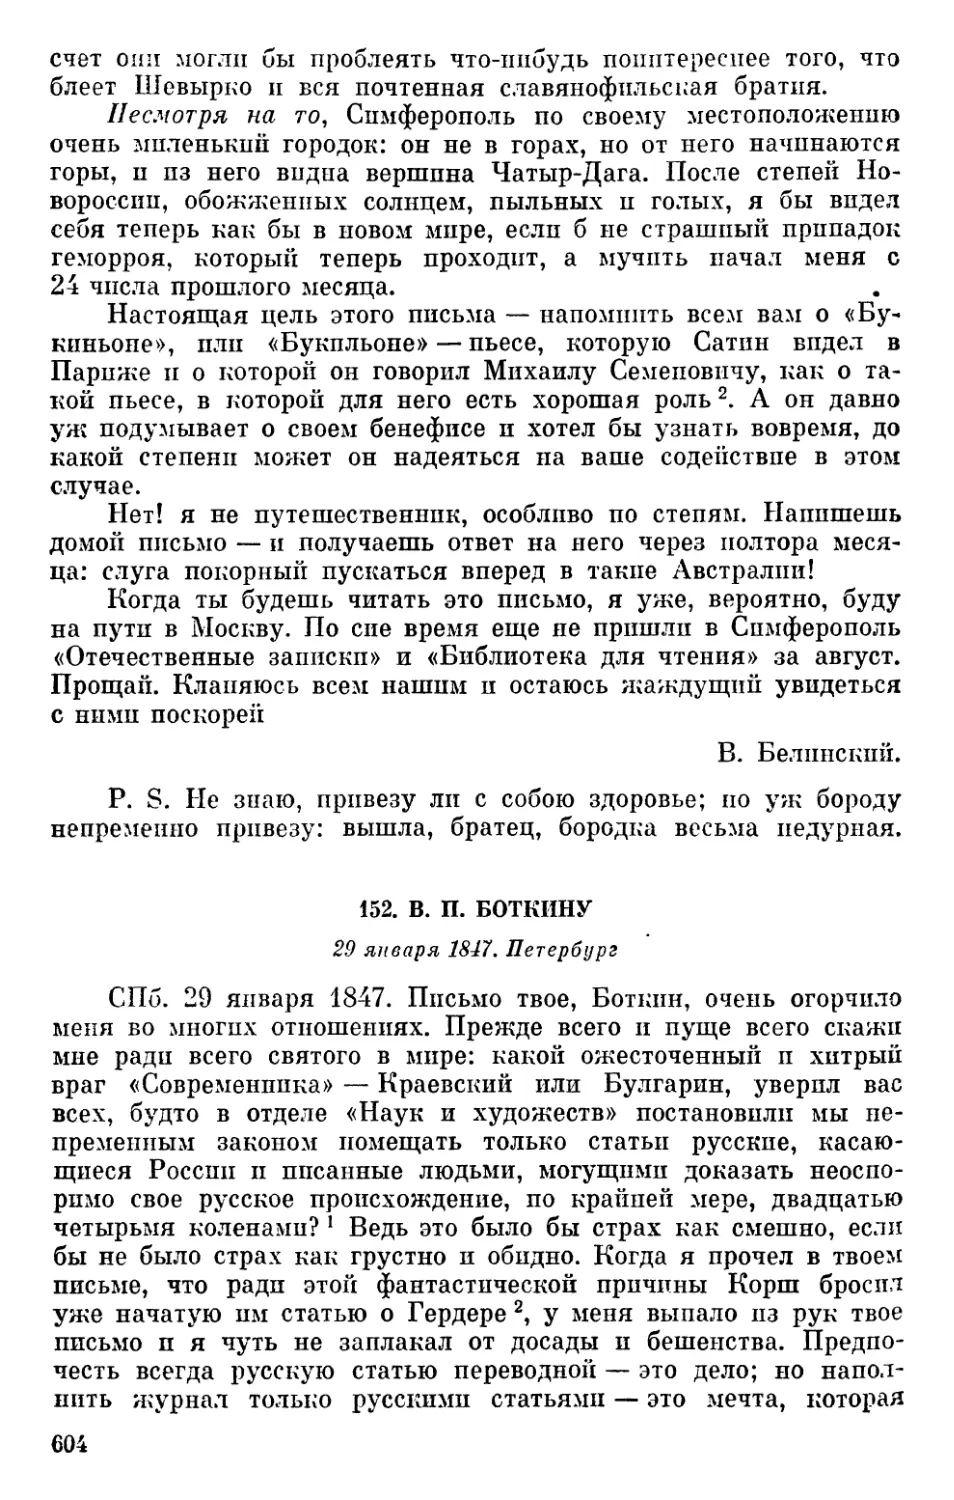 152. В. П. Боткину. 29 января 1847